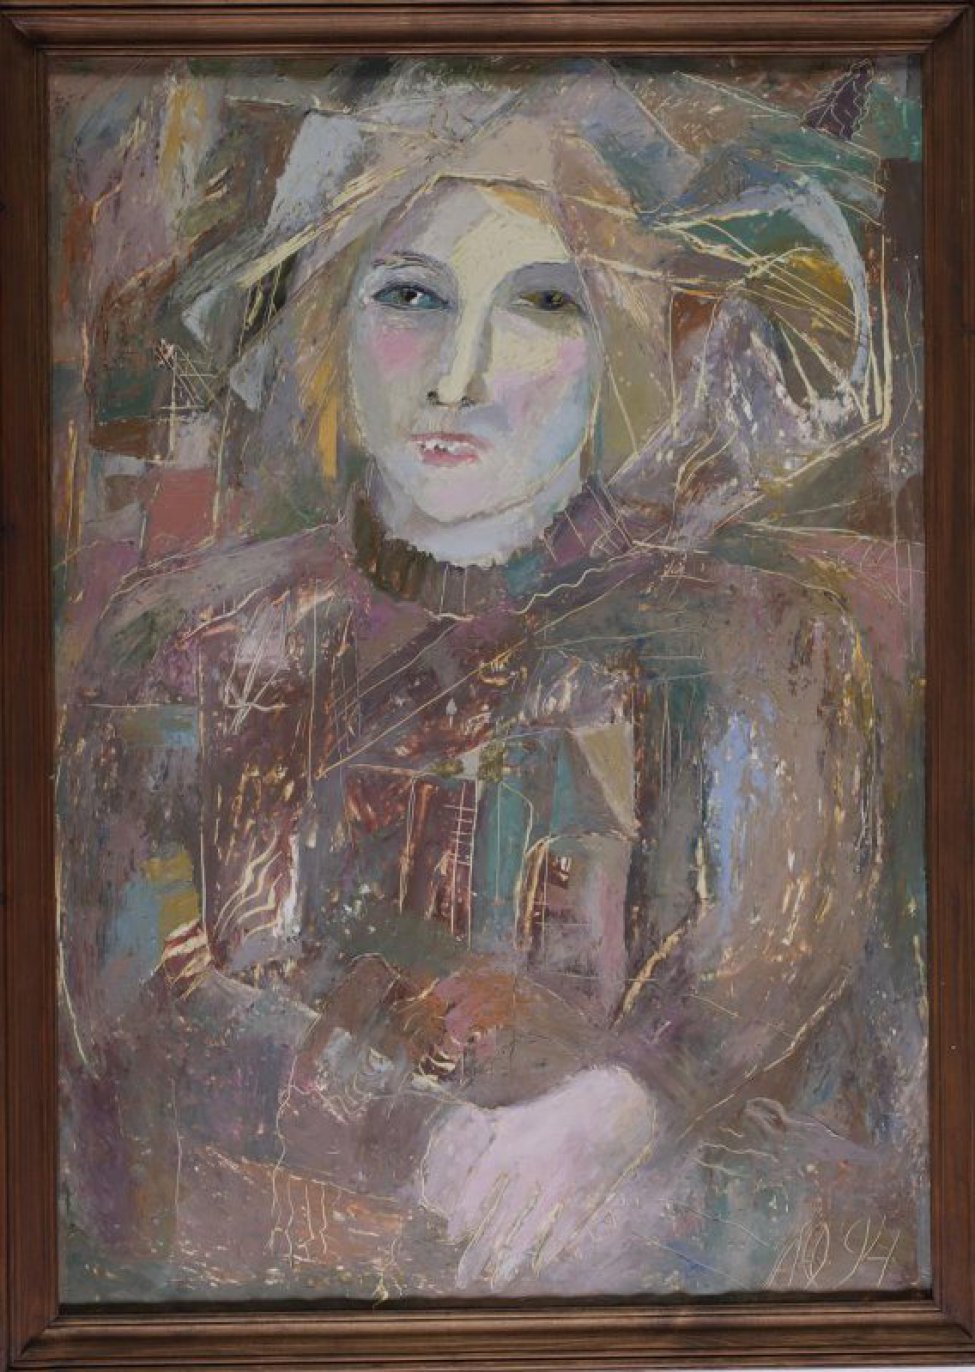 Поясное изображение молодой, светловолосой, светлоглазой, с полуоткрытым ртом женщины. Руки сложены впереди. Черты лица, вуаль (?) прорисованы, прочерчены сквозь слой масляной краски.